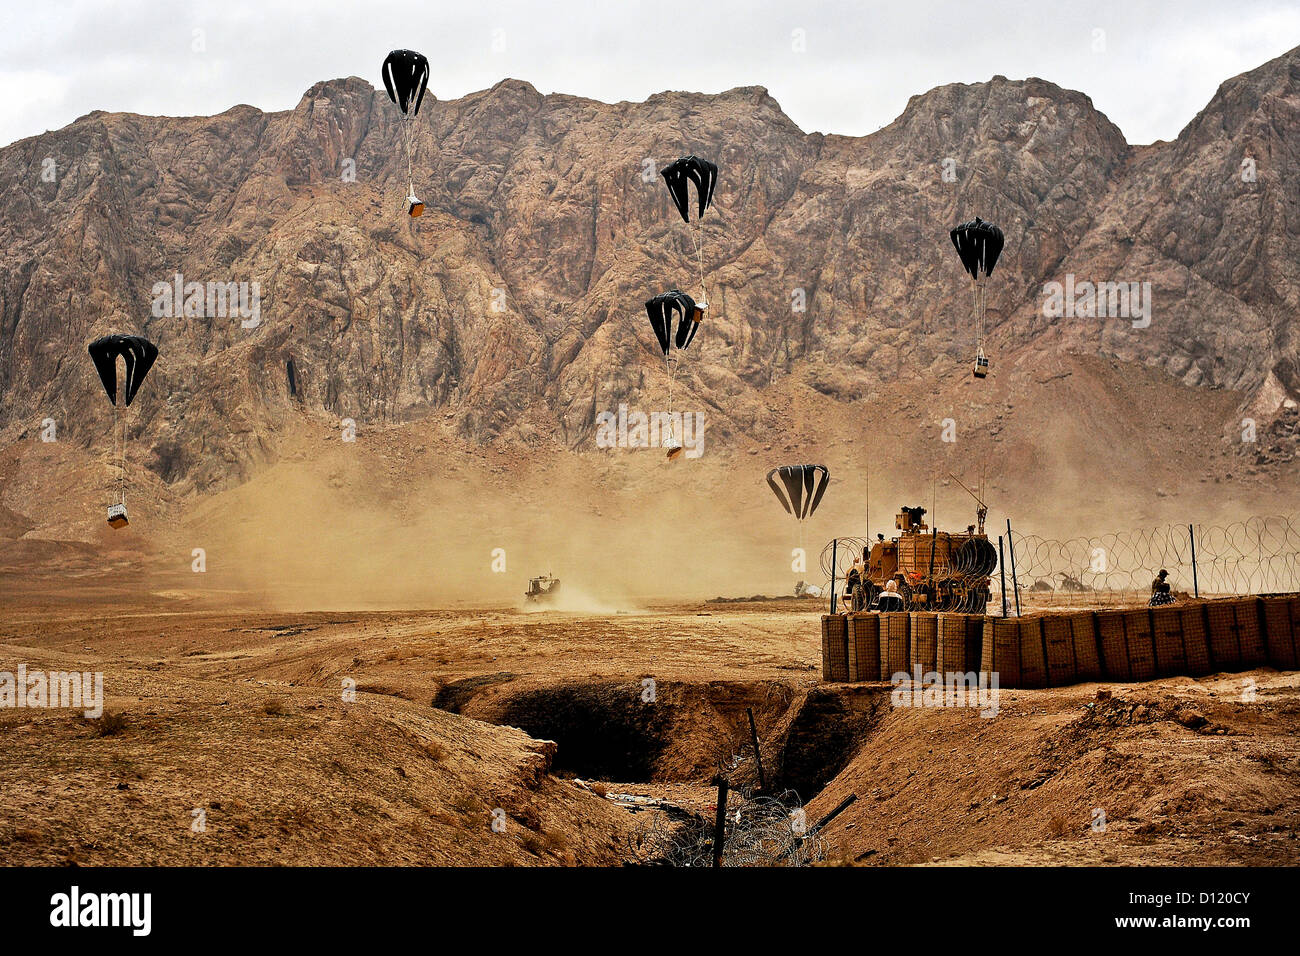 Los suministros son aire bajó a tropas de Noviembre 26, 2011 en Shah Joy, Afganistán. Los suministros son rutinariamente aire bajó a ubicaciones remotas en Afganistán para sostener las bases de funcionamiento de avance, avanzadillas de combate y soldados en esos lugares. Foto de stock